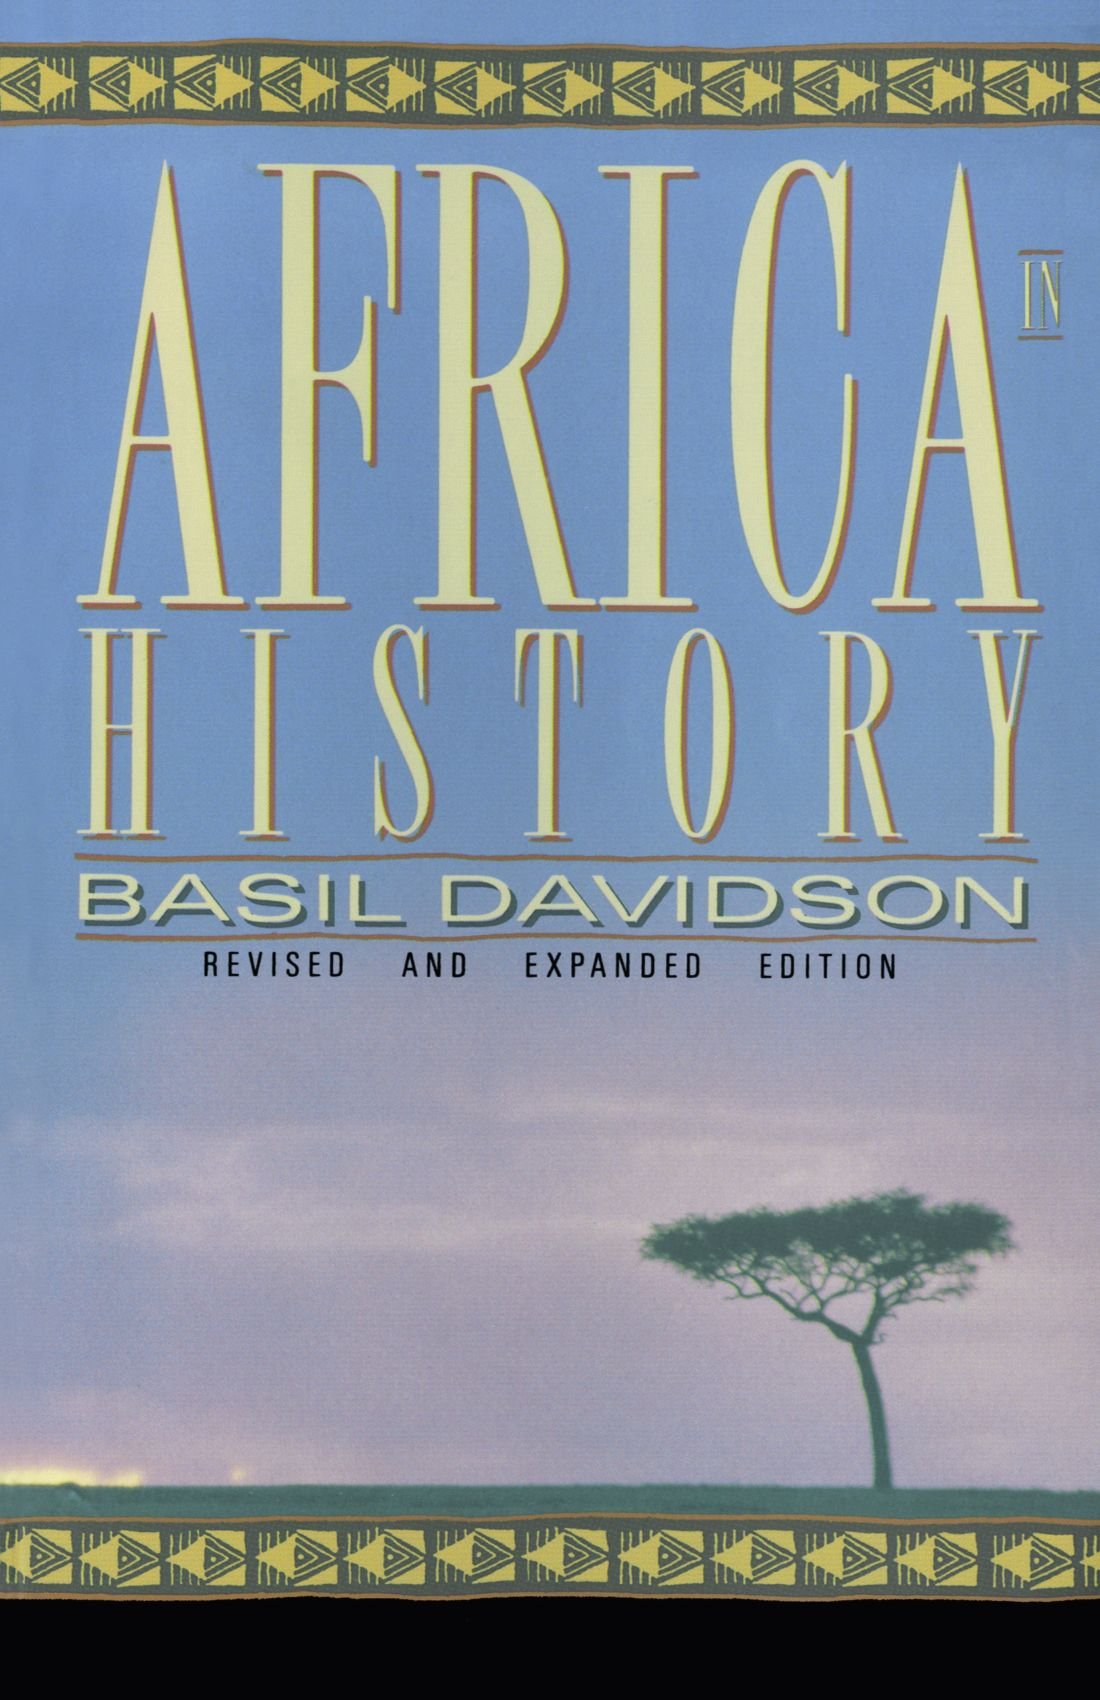 https://www.brhombic-int.com/wp-content/uploads/2021/02/africainhistory.jpg